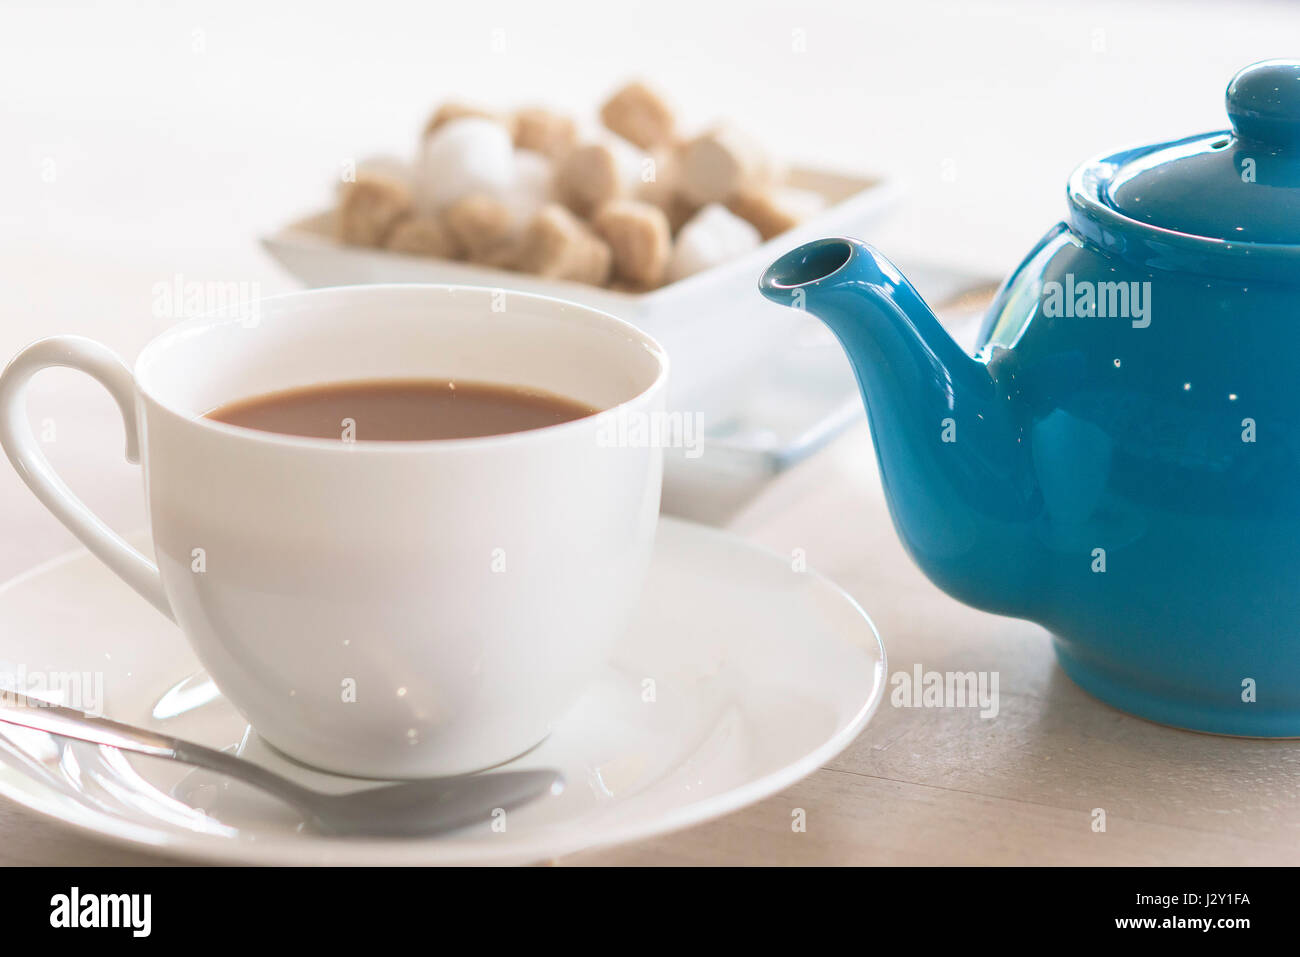 Tasse Tee Teekanne erfrischend Erfrischung Geschirr stimulierende Getränke britische Stockfoto